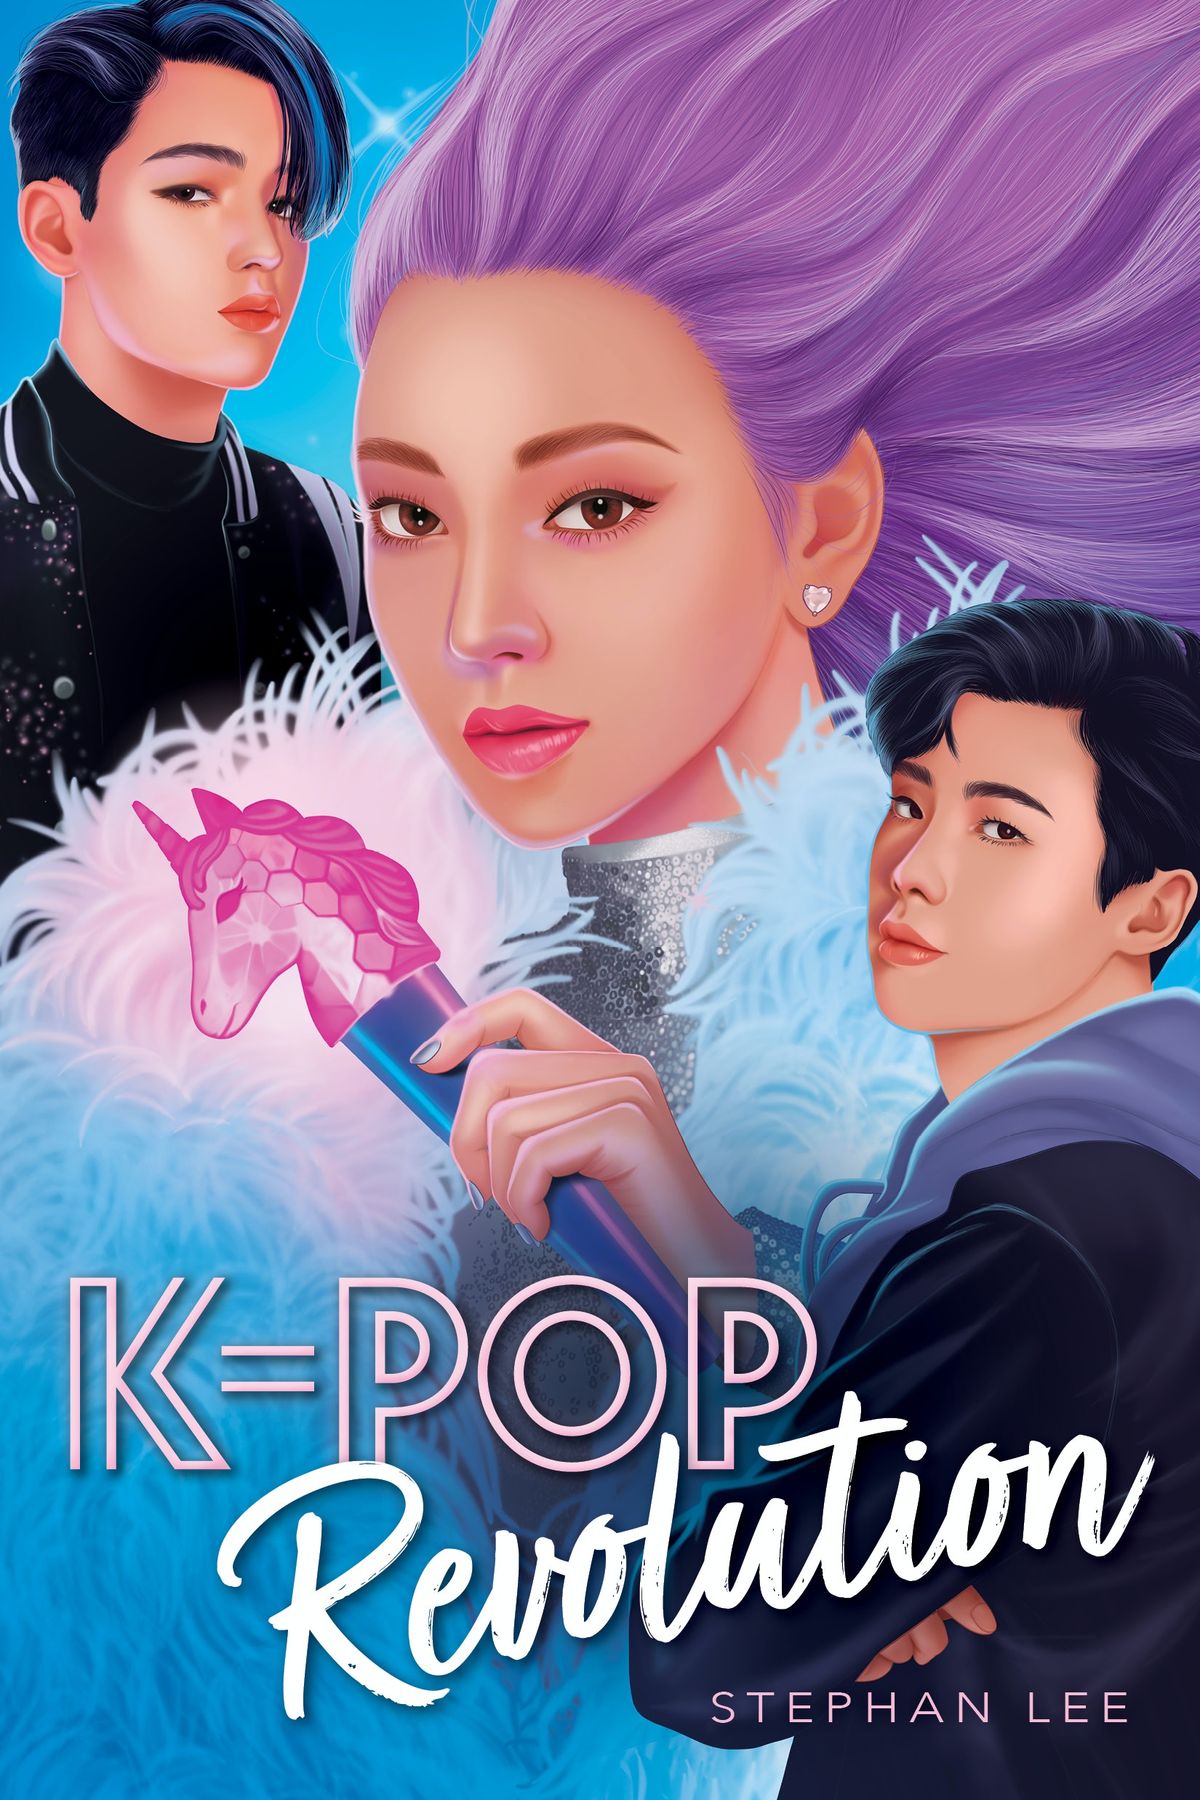 Oglejte si zaupno nadaljevanje K-Pop Stephana Leeja, K-Pop Revolution